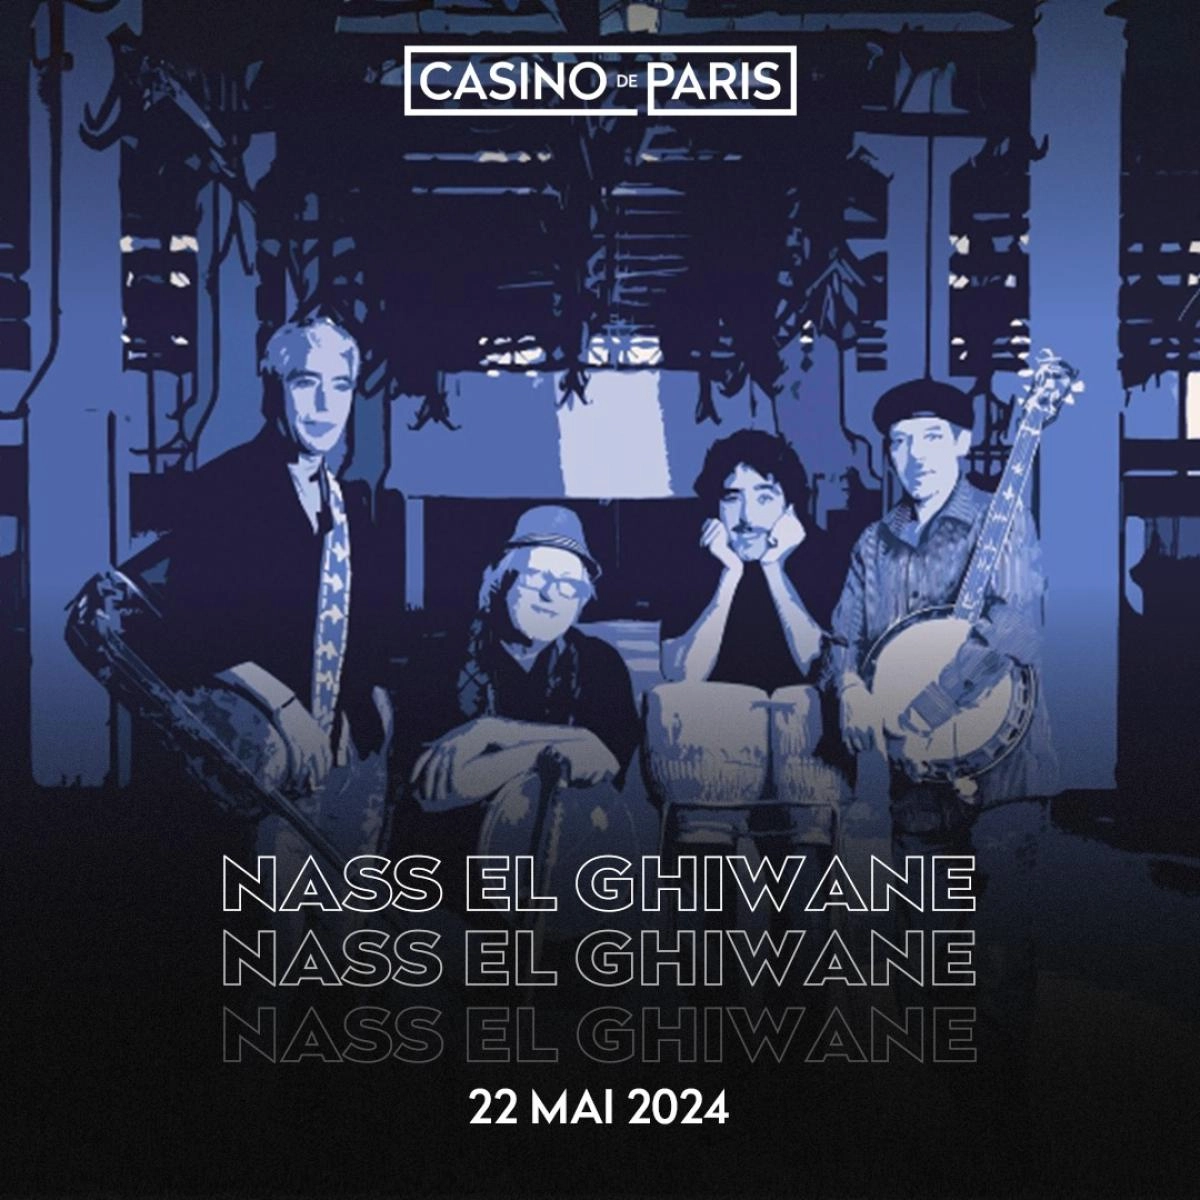 Billets Nass El Ghiwane (Casino de Paris - Paris)